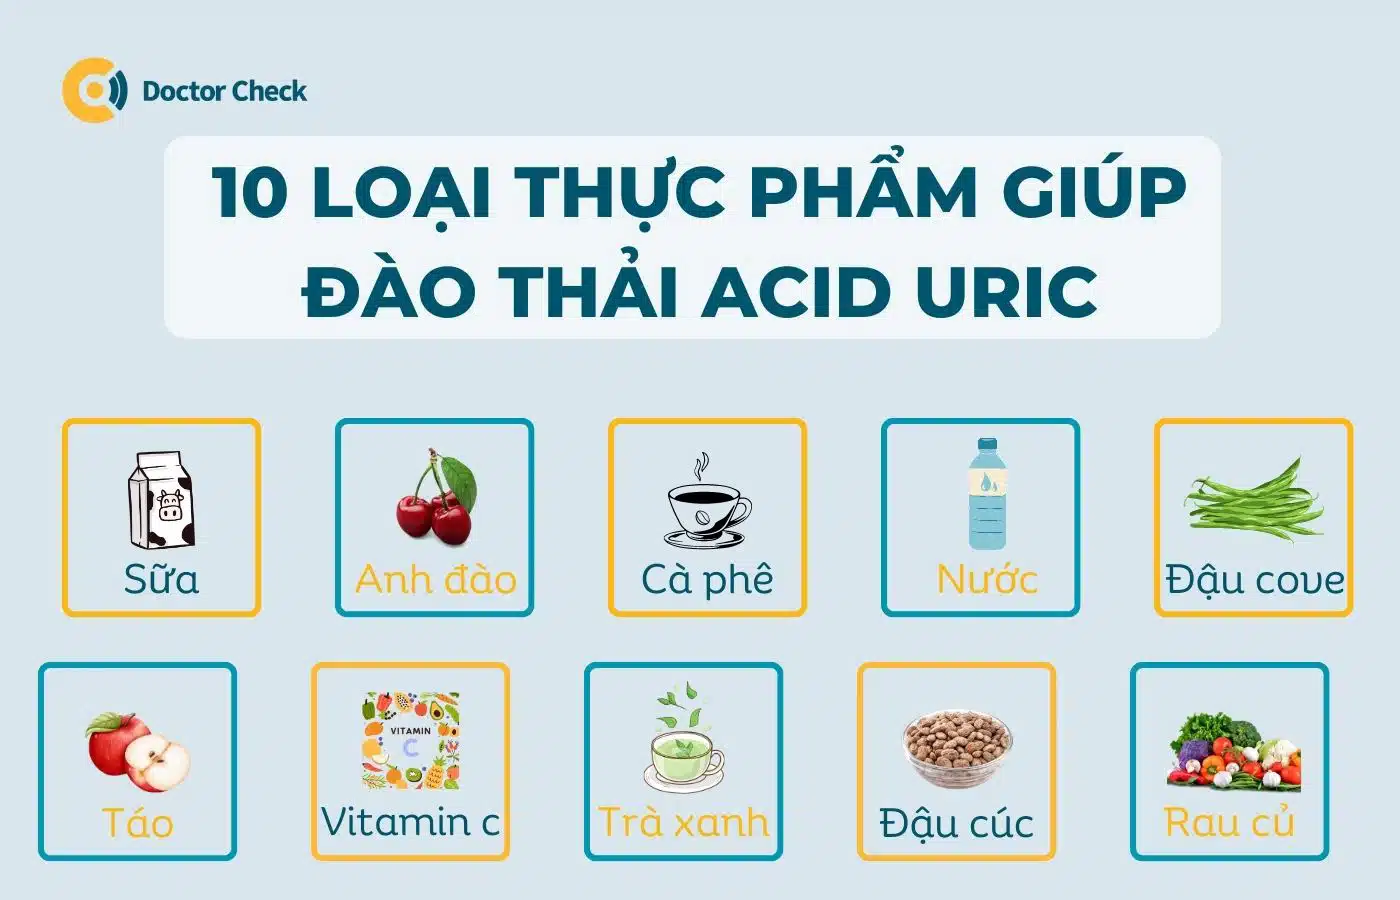 10 loại thực phẩm giúp đào thải acid uric tốt nhất là gì?